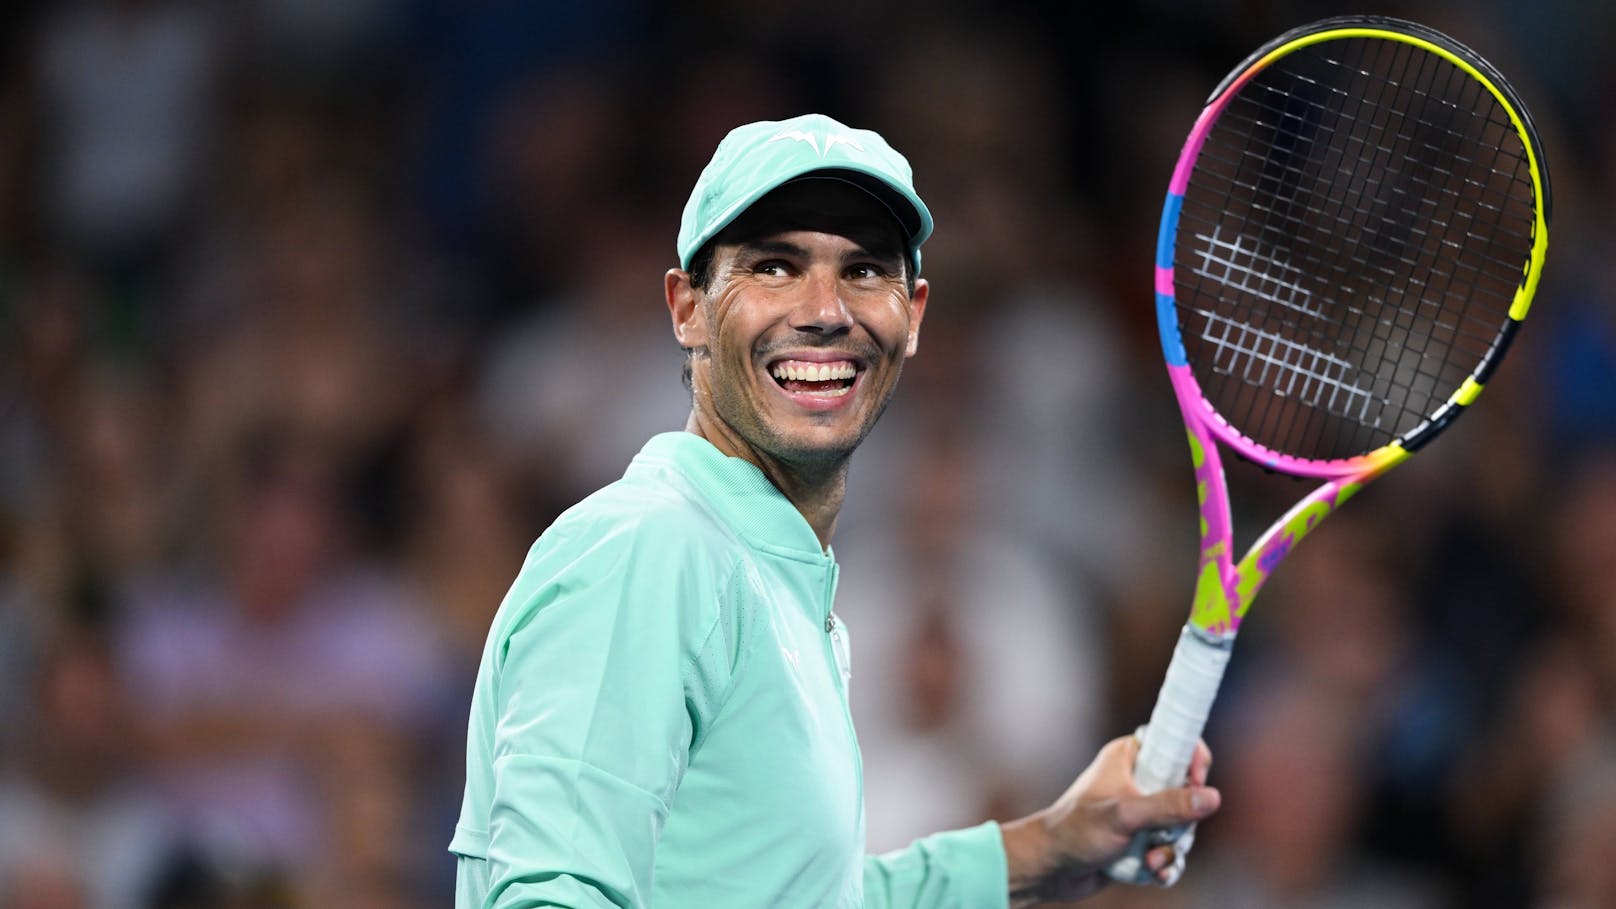 Zu lange Klopause: Tennis-Star Nadal sorgt für Lacher